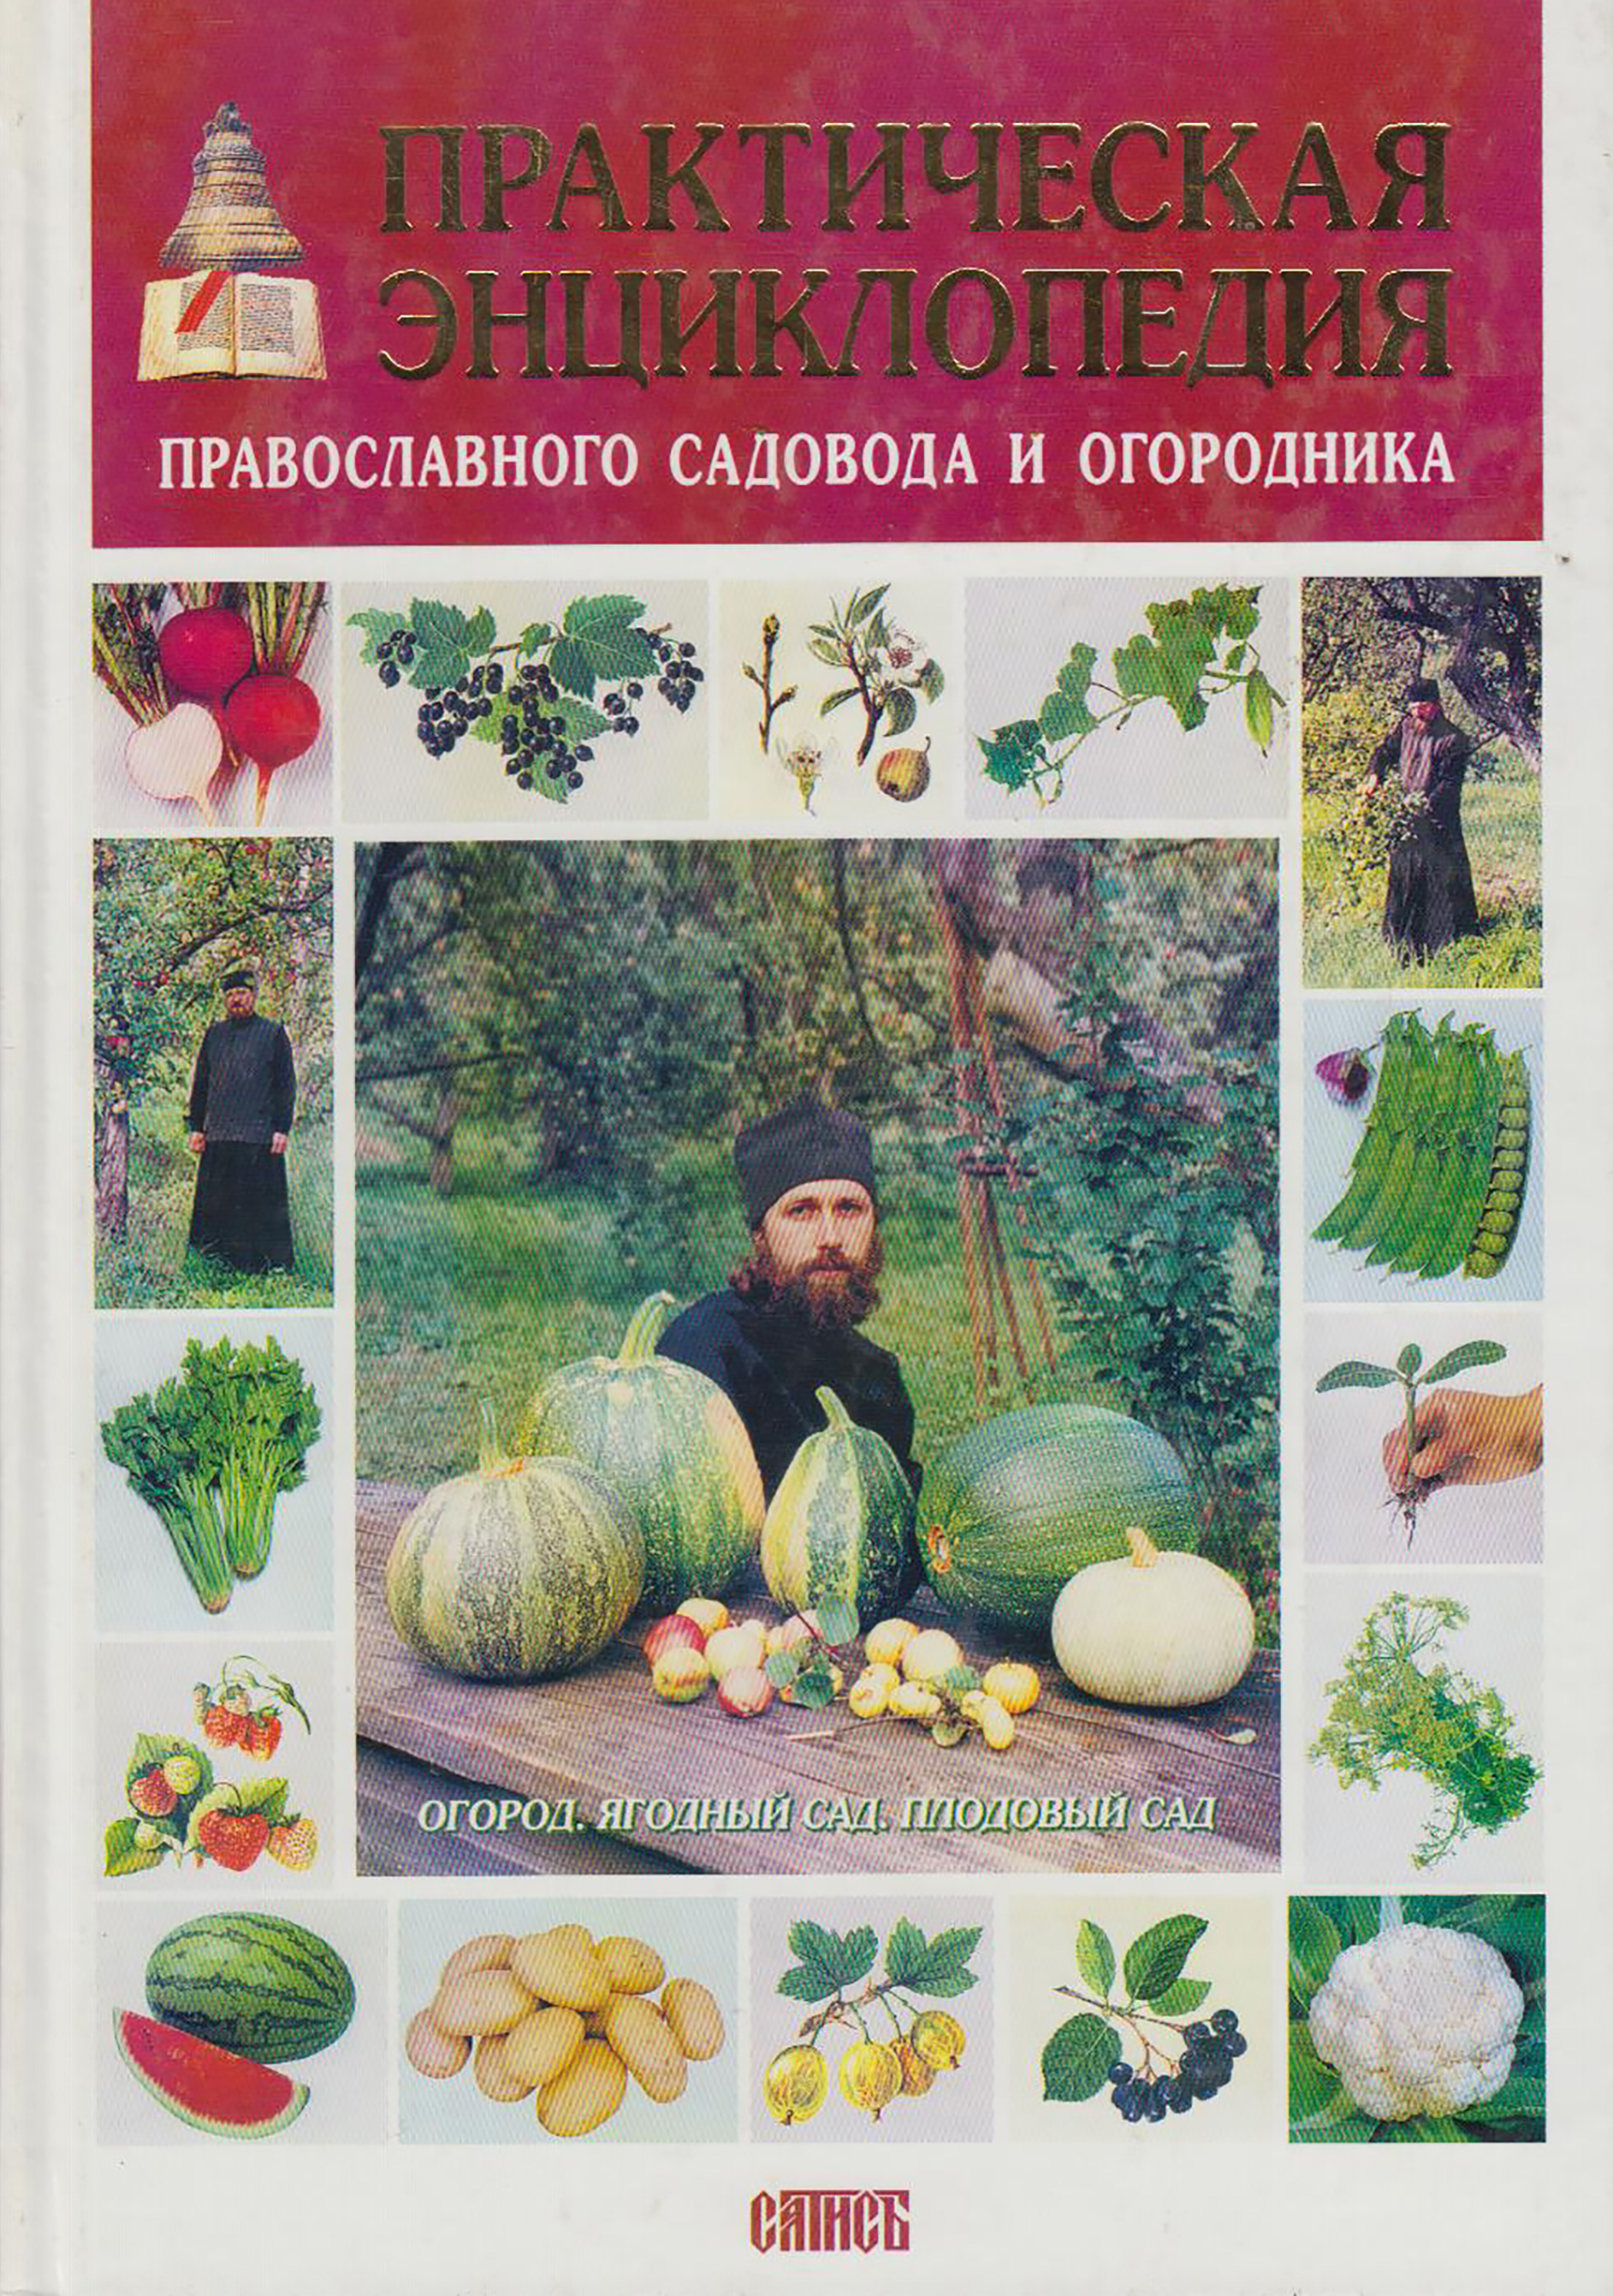 Практическая энциклопедия православного садовода и огородника